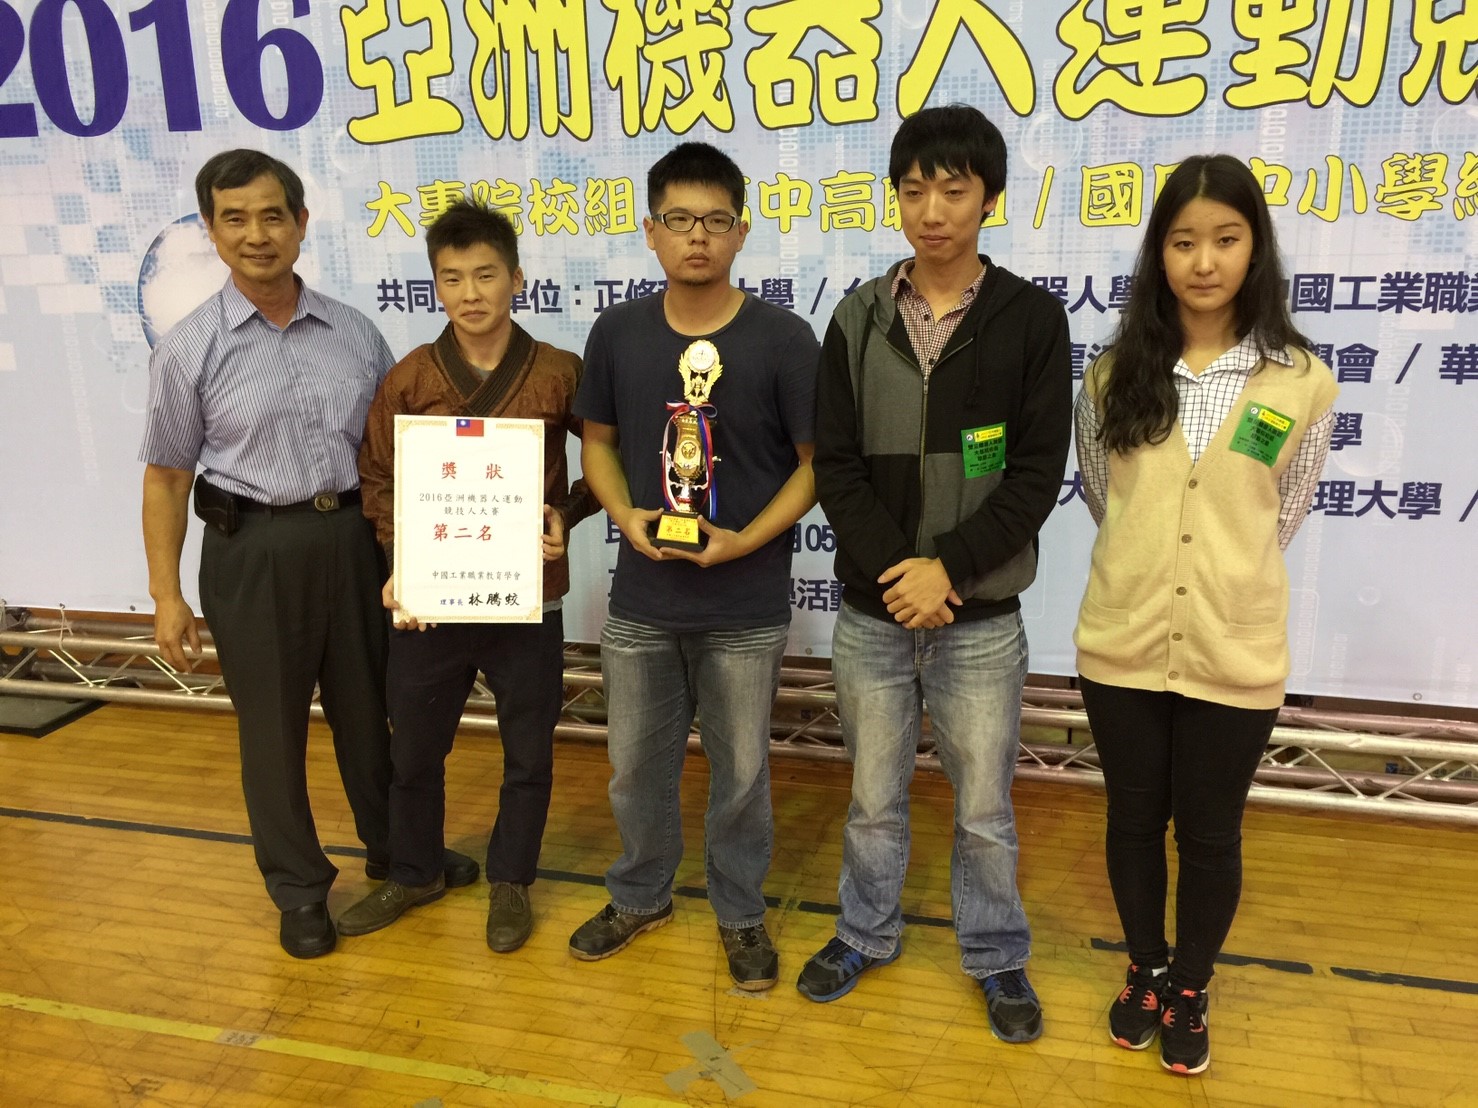 2016.11.05亞洲機器人大賽頒獎_170302_0048